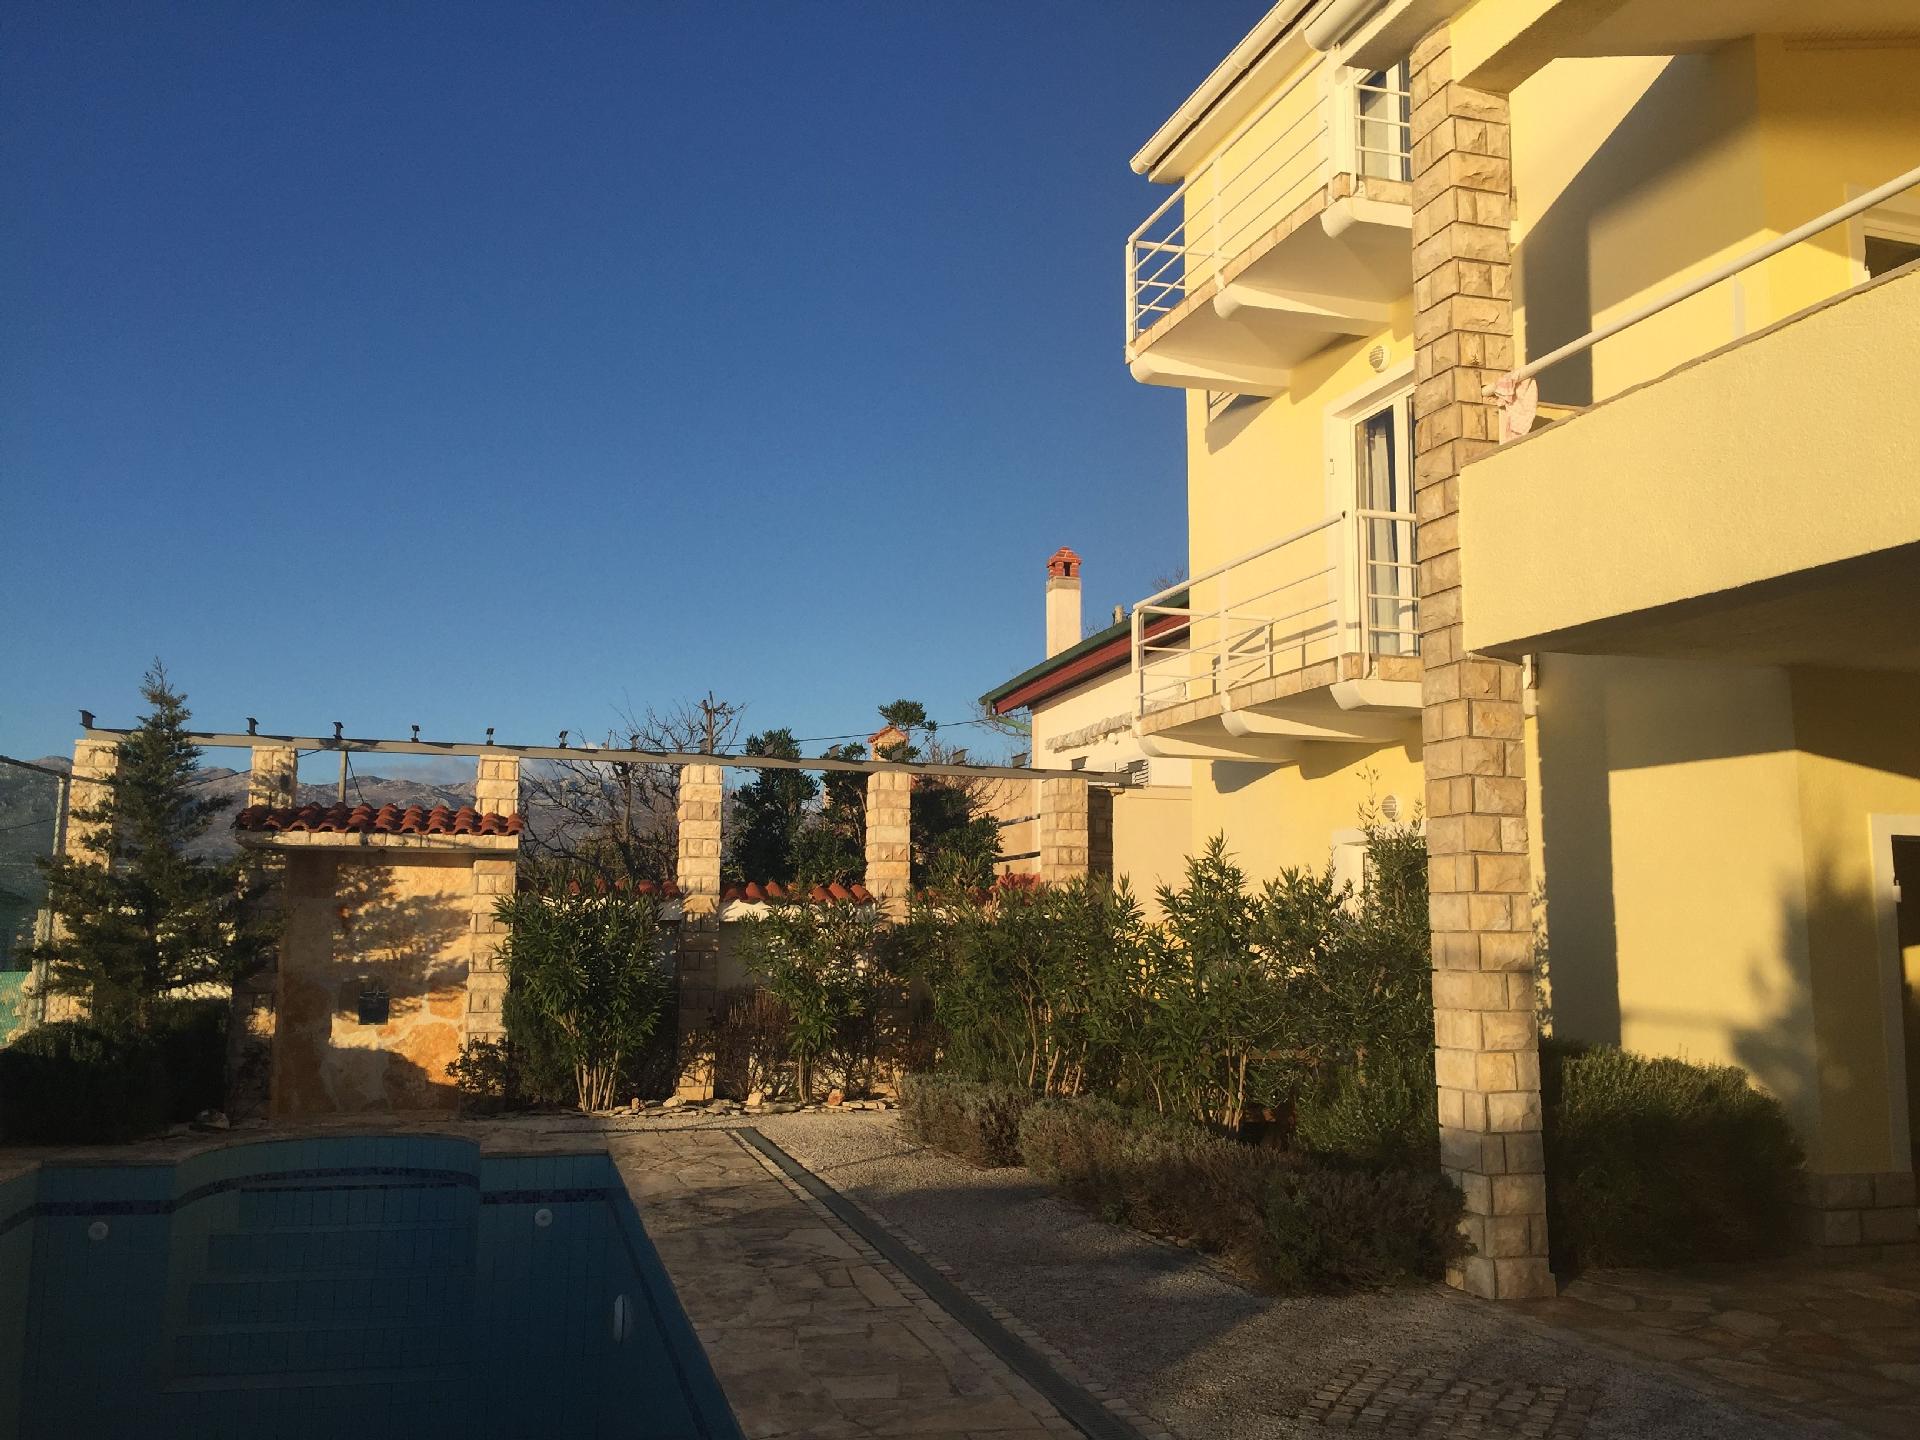 Ferienwohnung für vier Personen mit Balkon im Ferienhaus in Dalmatien